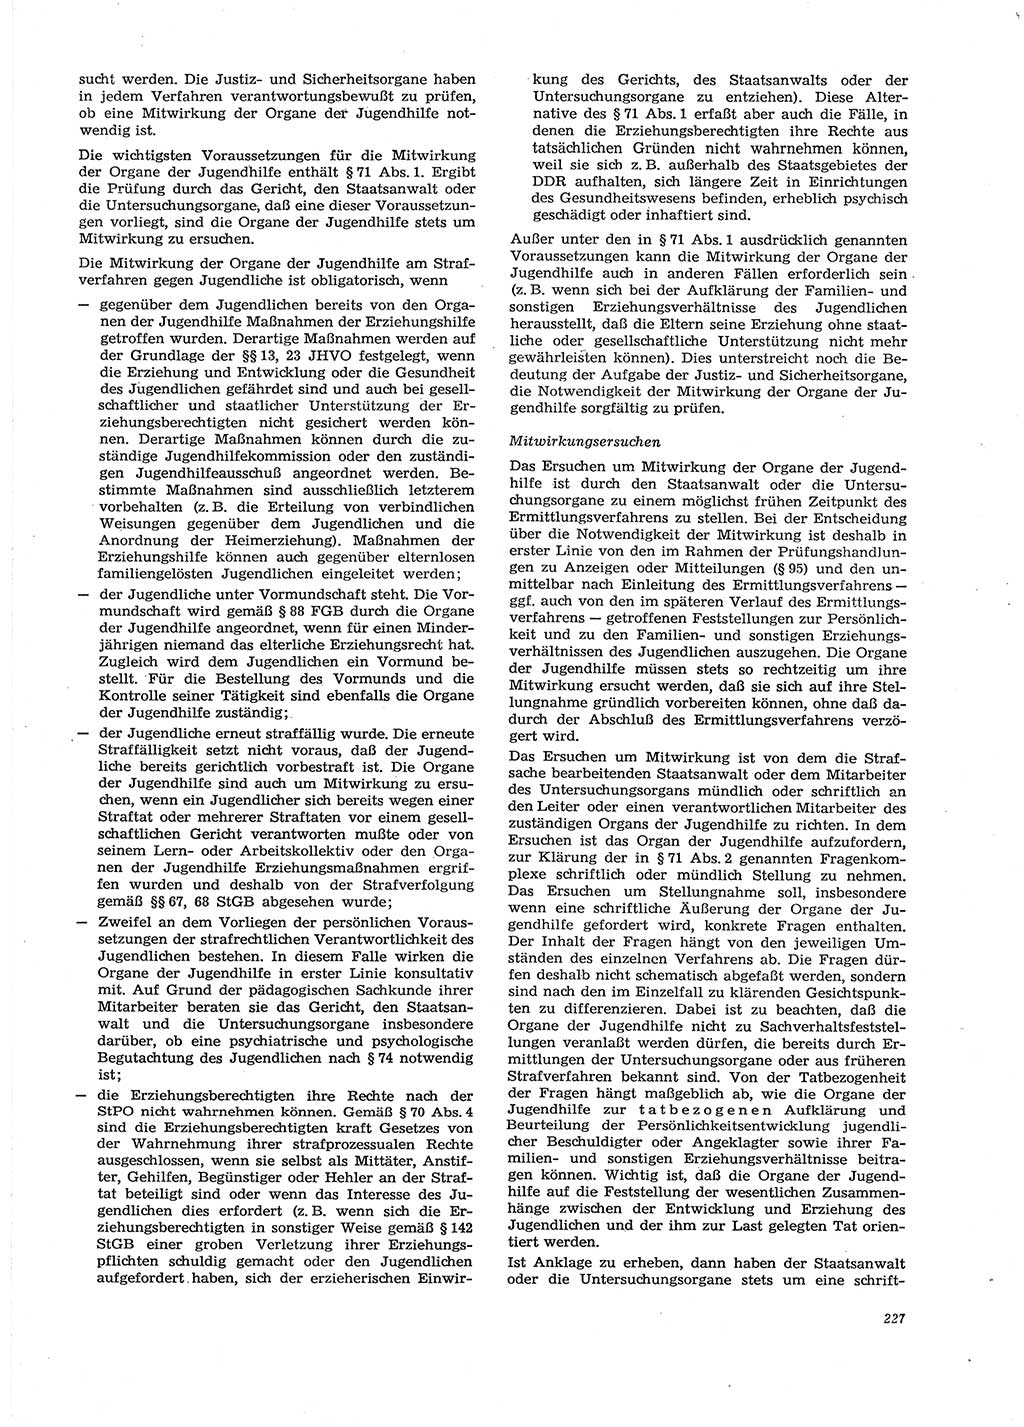 Neue Justiz (NJ), Zeitschrift für Recht und Rechtswissenschaft [Deutsche Demokratische Republik (DDR)], 29. Jahrgang 1975, Seite 227 (NJ DDR 1975, S. 227)